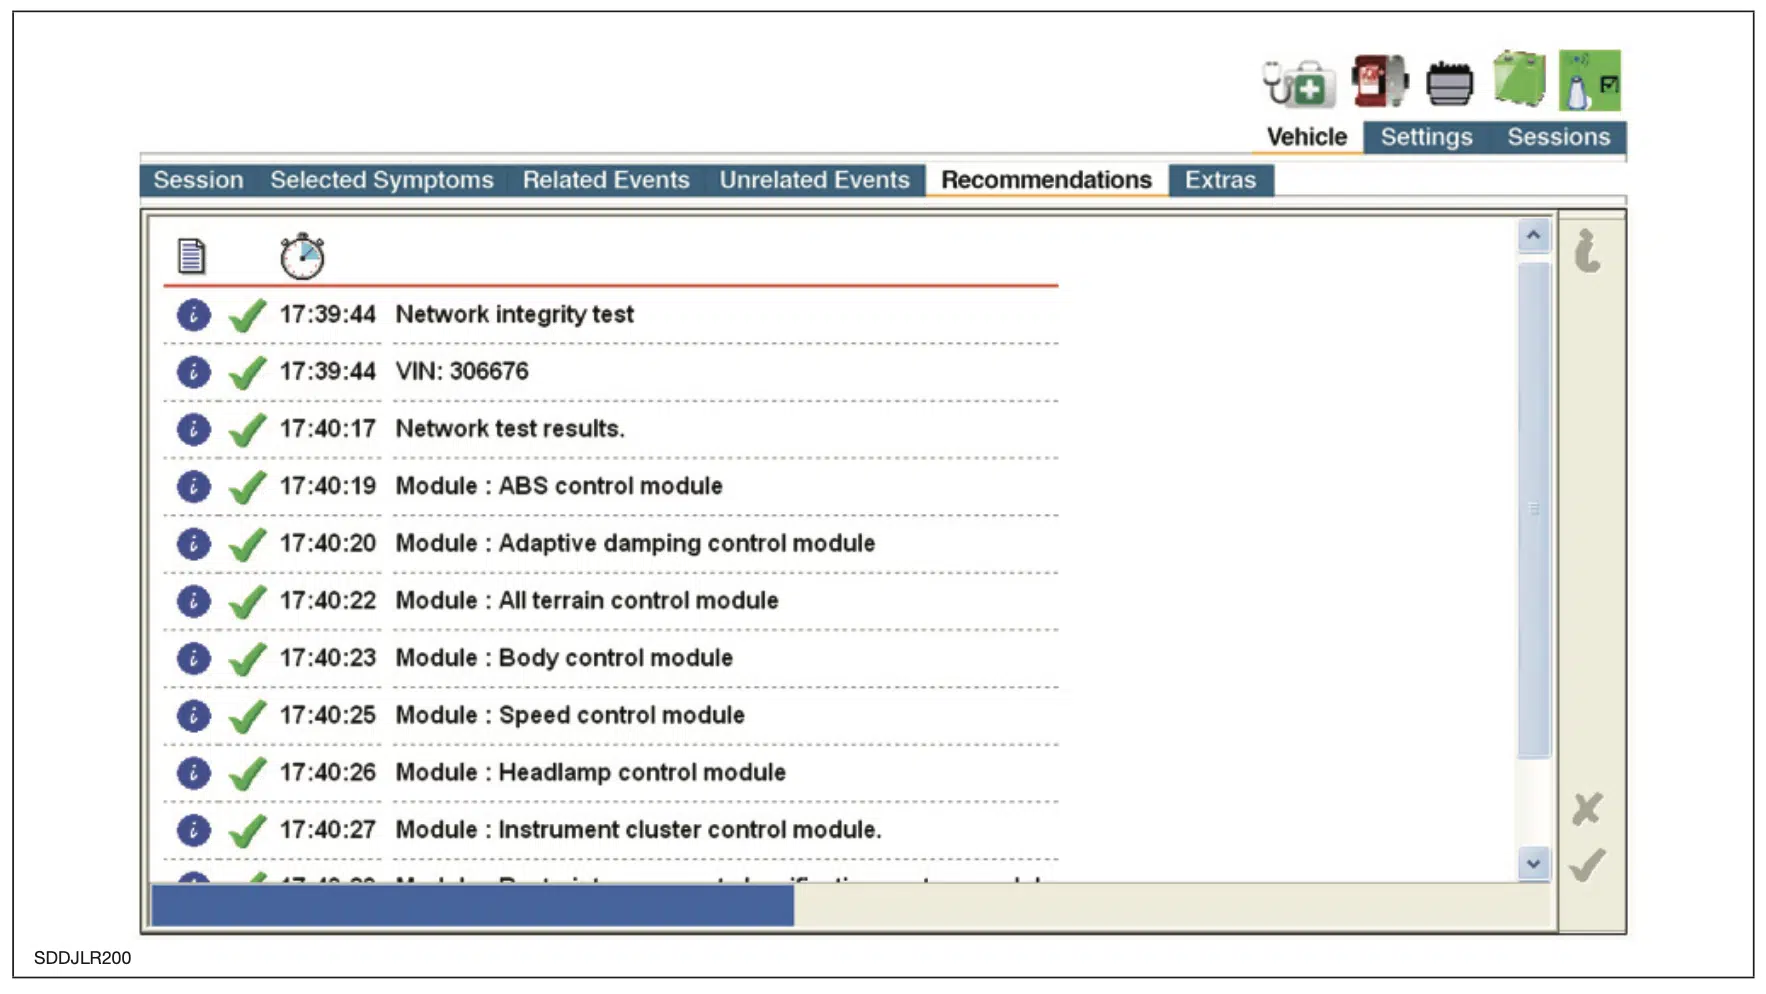 Captura de pantalla de la sesión del software SDD de JLR para la lista de comprobación de acciones recomendadas tras el informe de síntomas del vehículo.